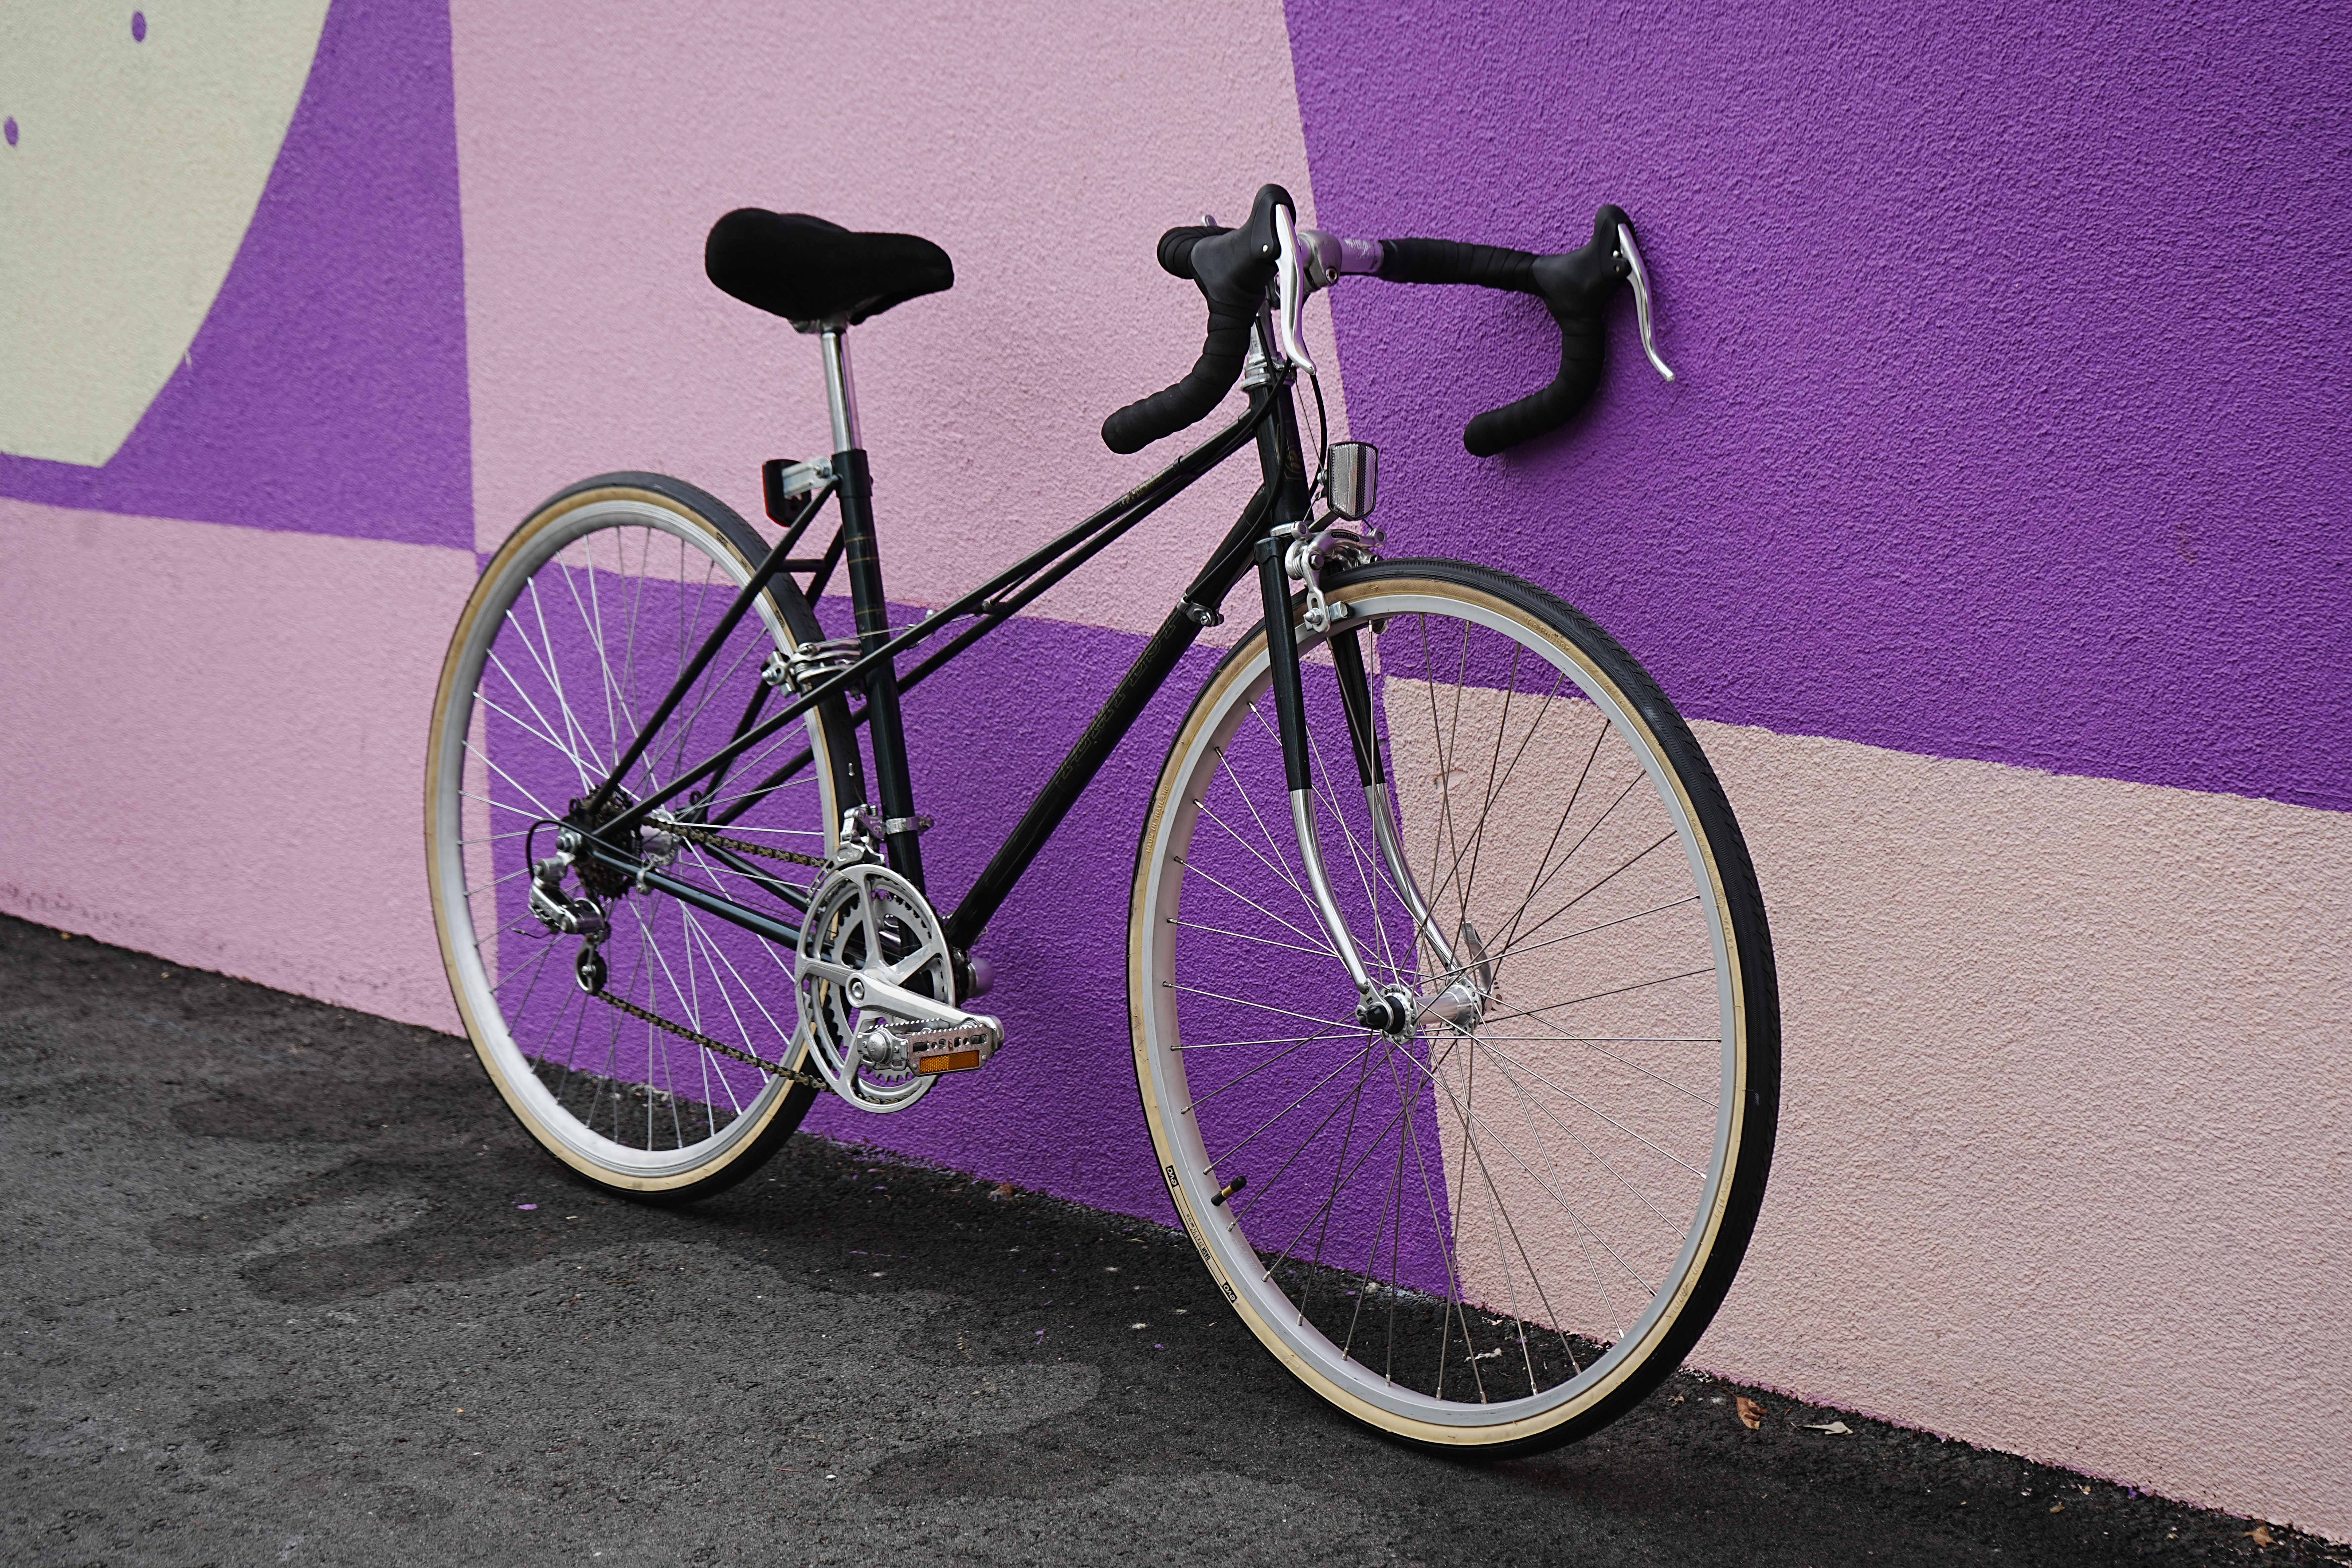 48cm Tempest road bike – Refurbished